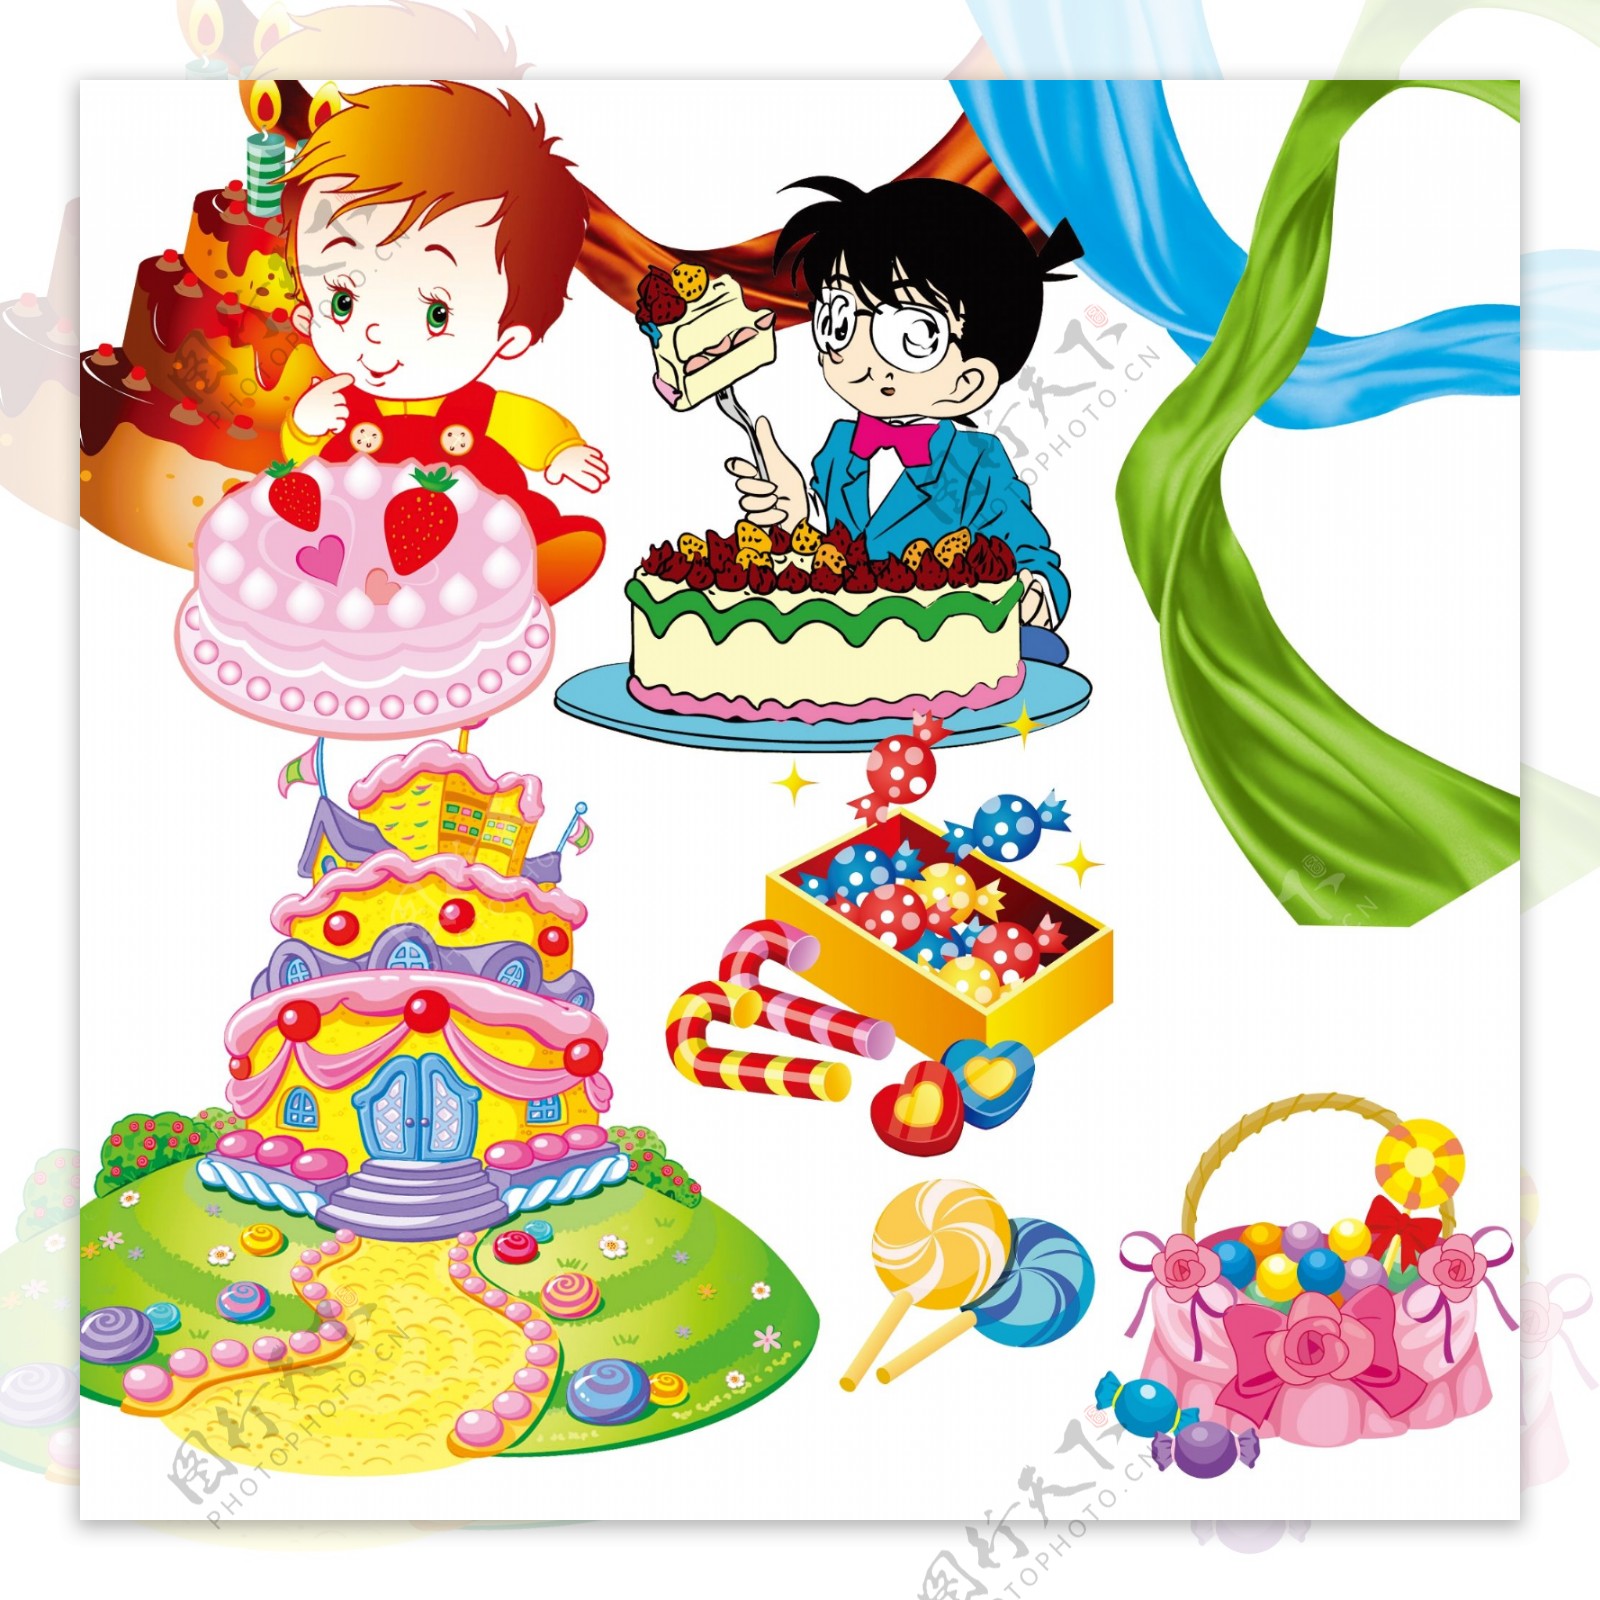 卡通美食的生日蛋糕插画_动漫人物_动漫卡通-图行天下素材网